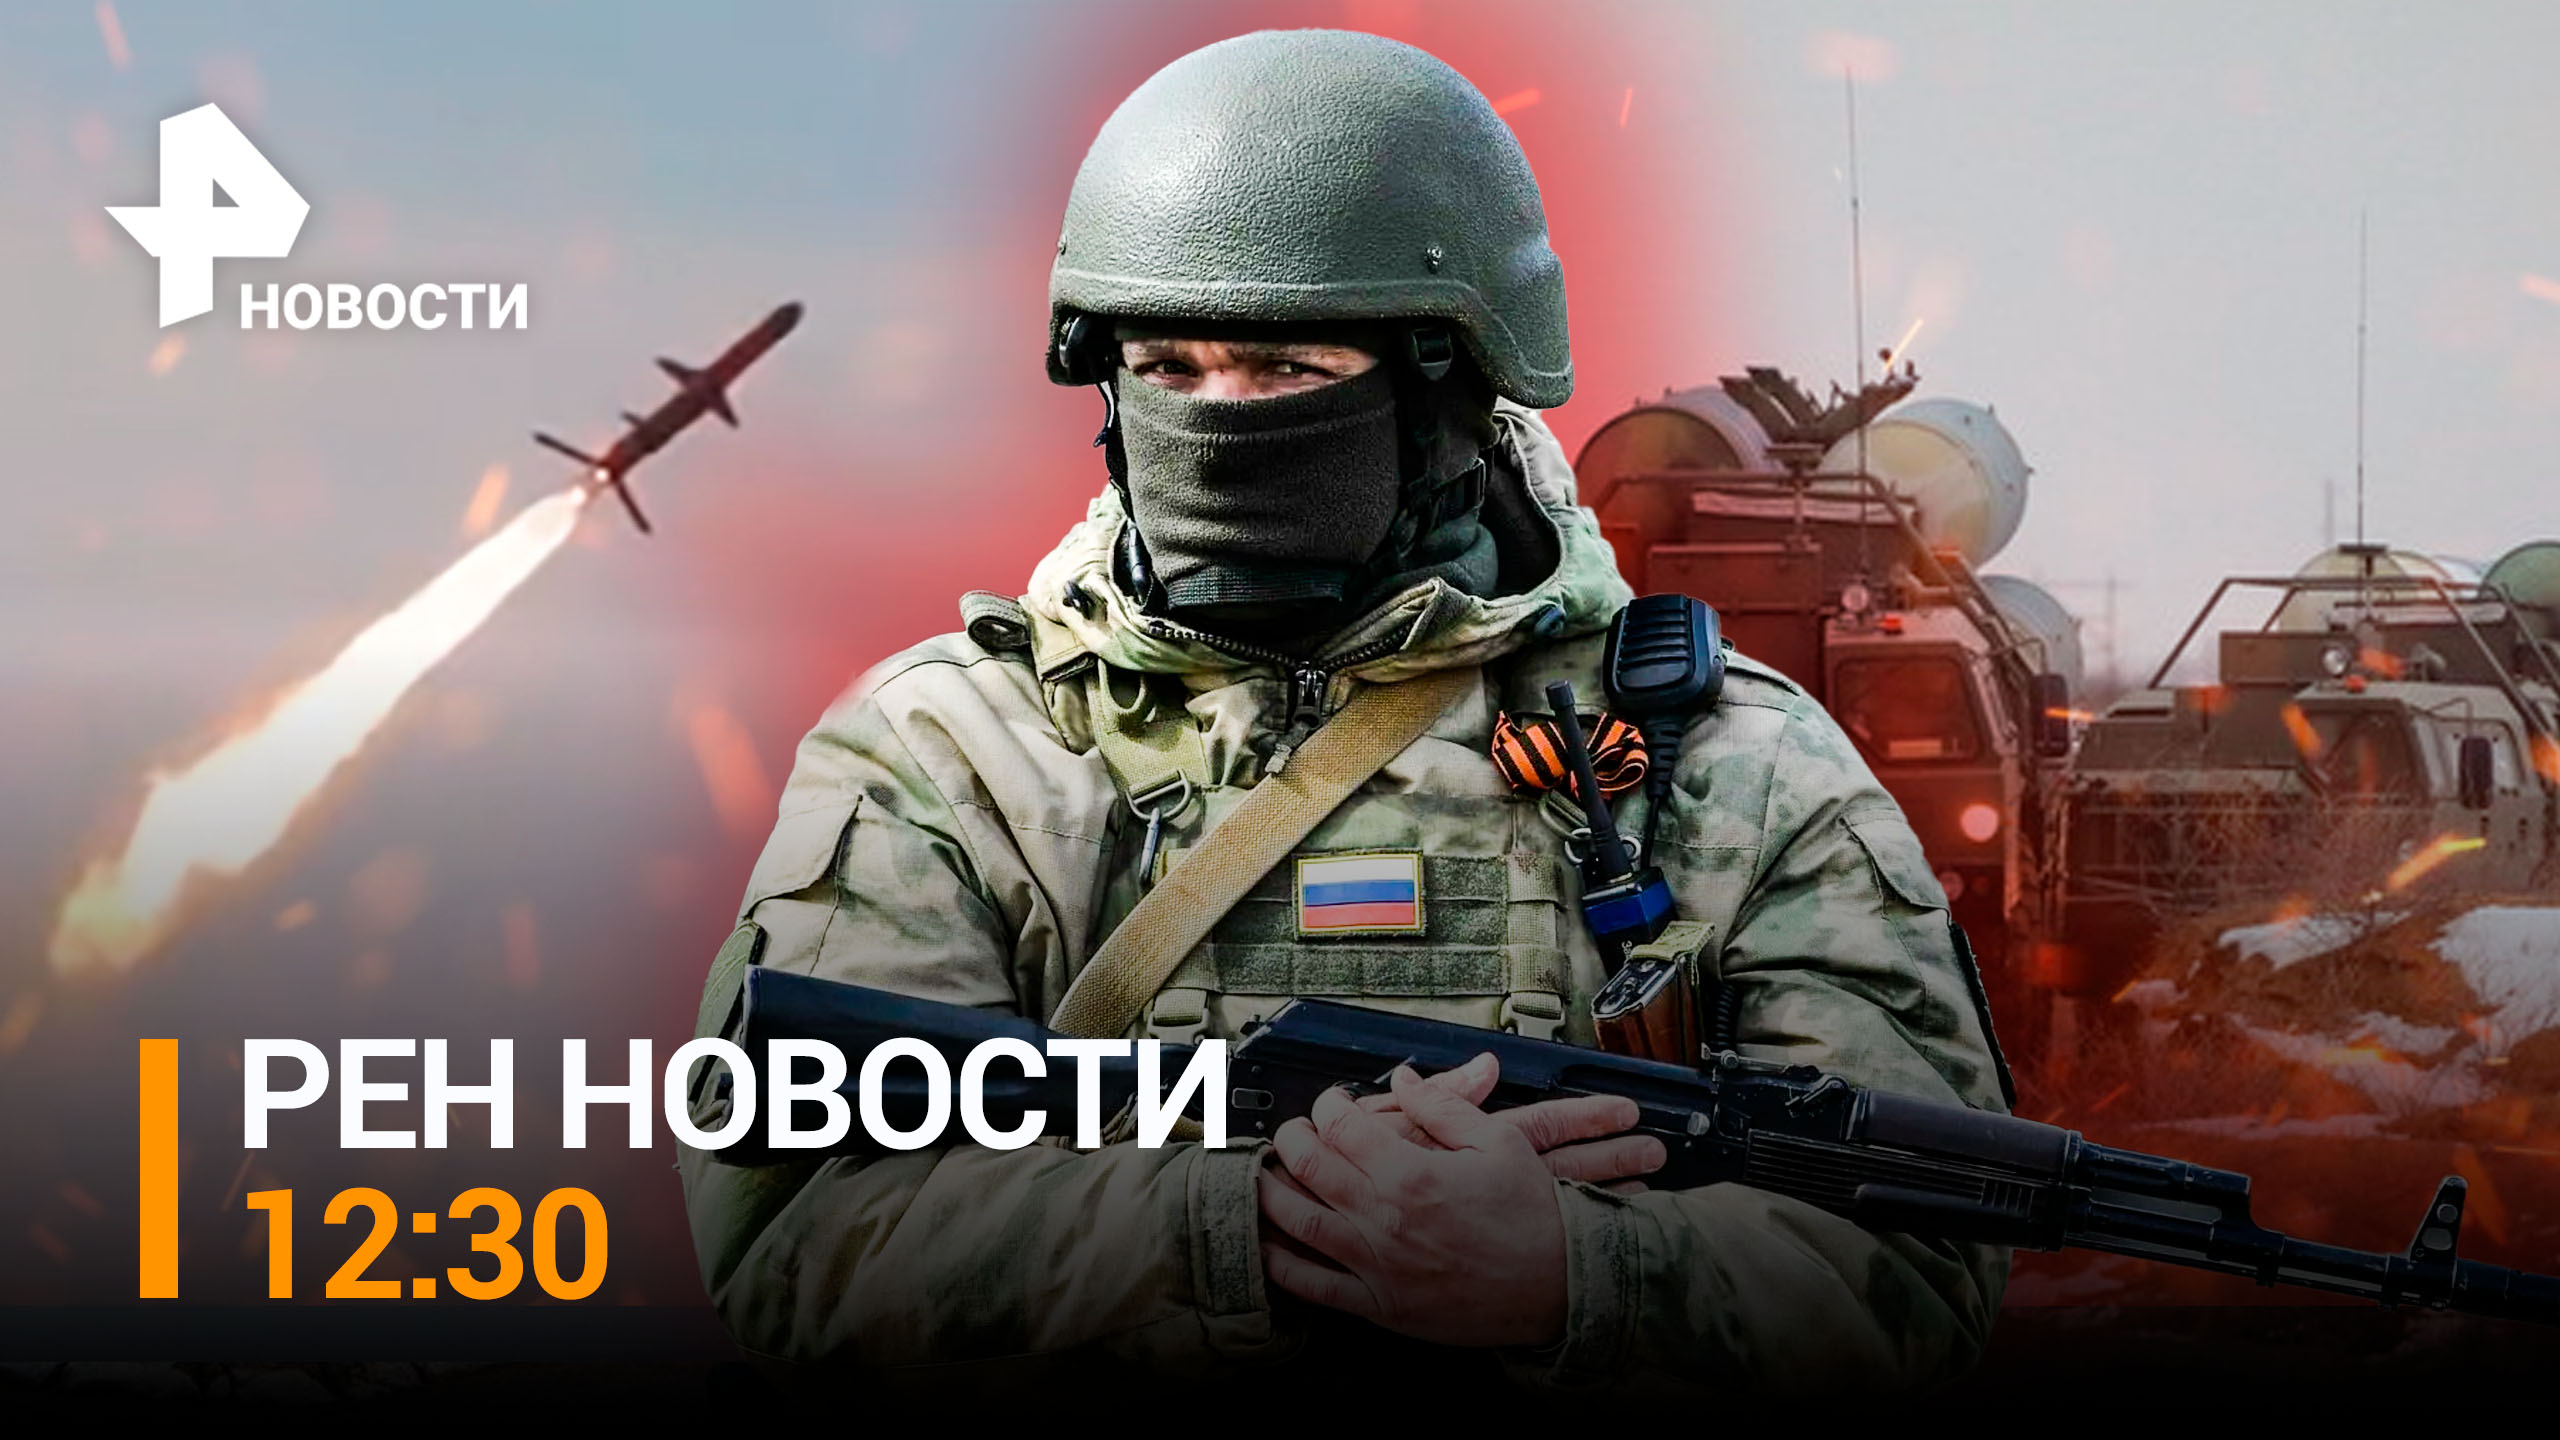 Новая атака ВСУ на Донецк. Новейшие дроны "Орлан" отражают удары / РЕН ТВ НОВОСТИ 12:30 от 29.12.22